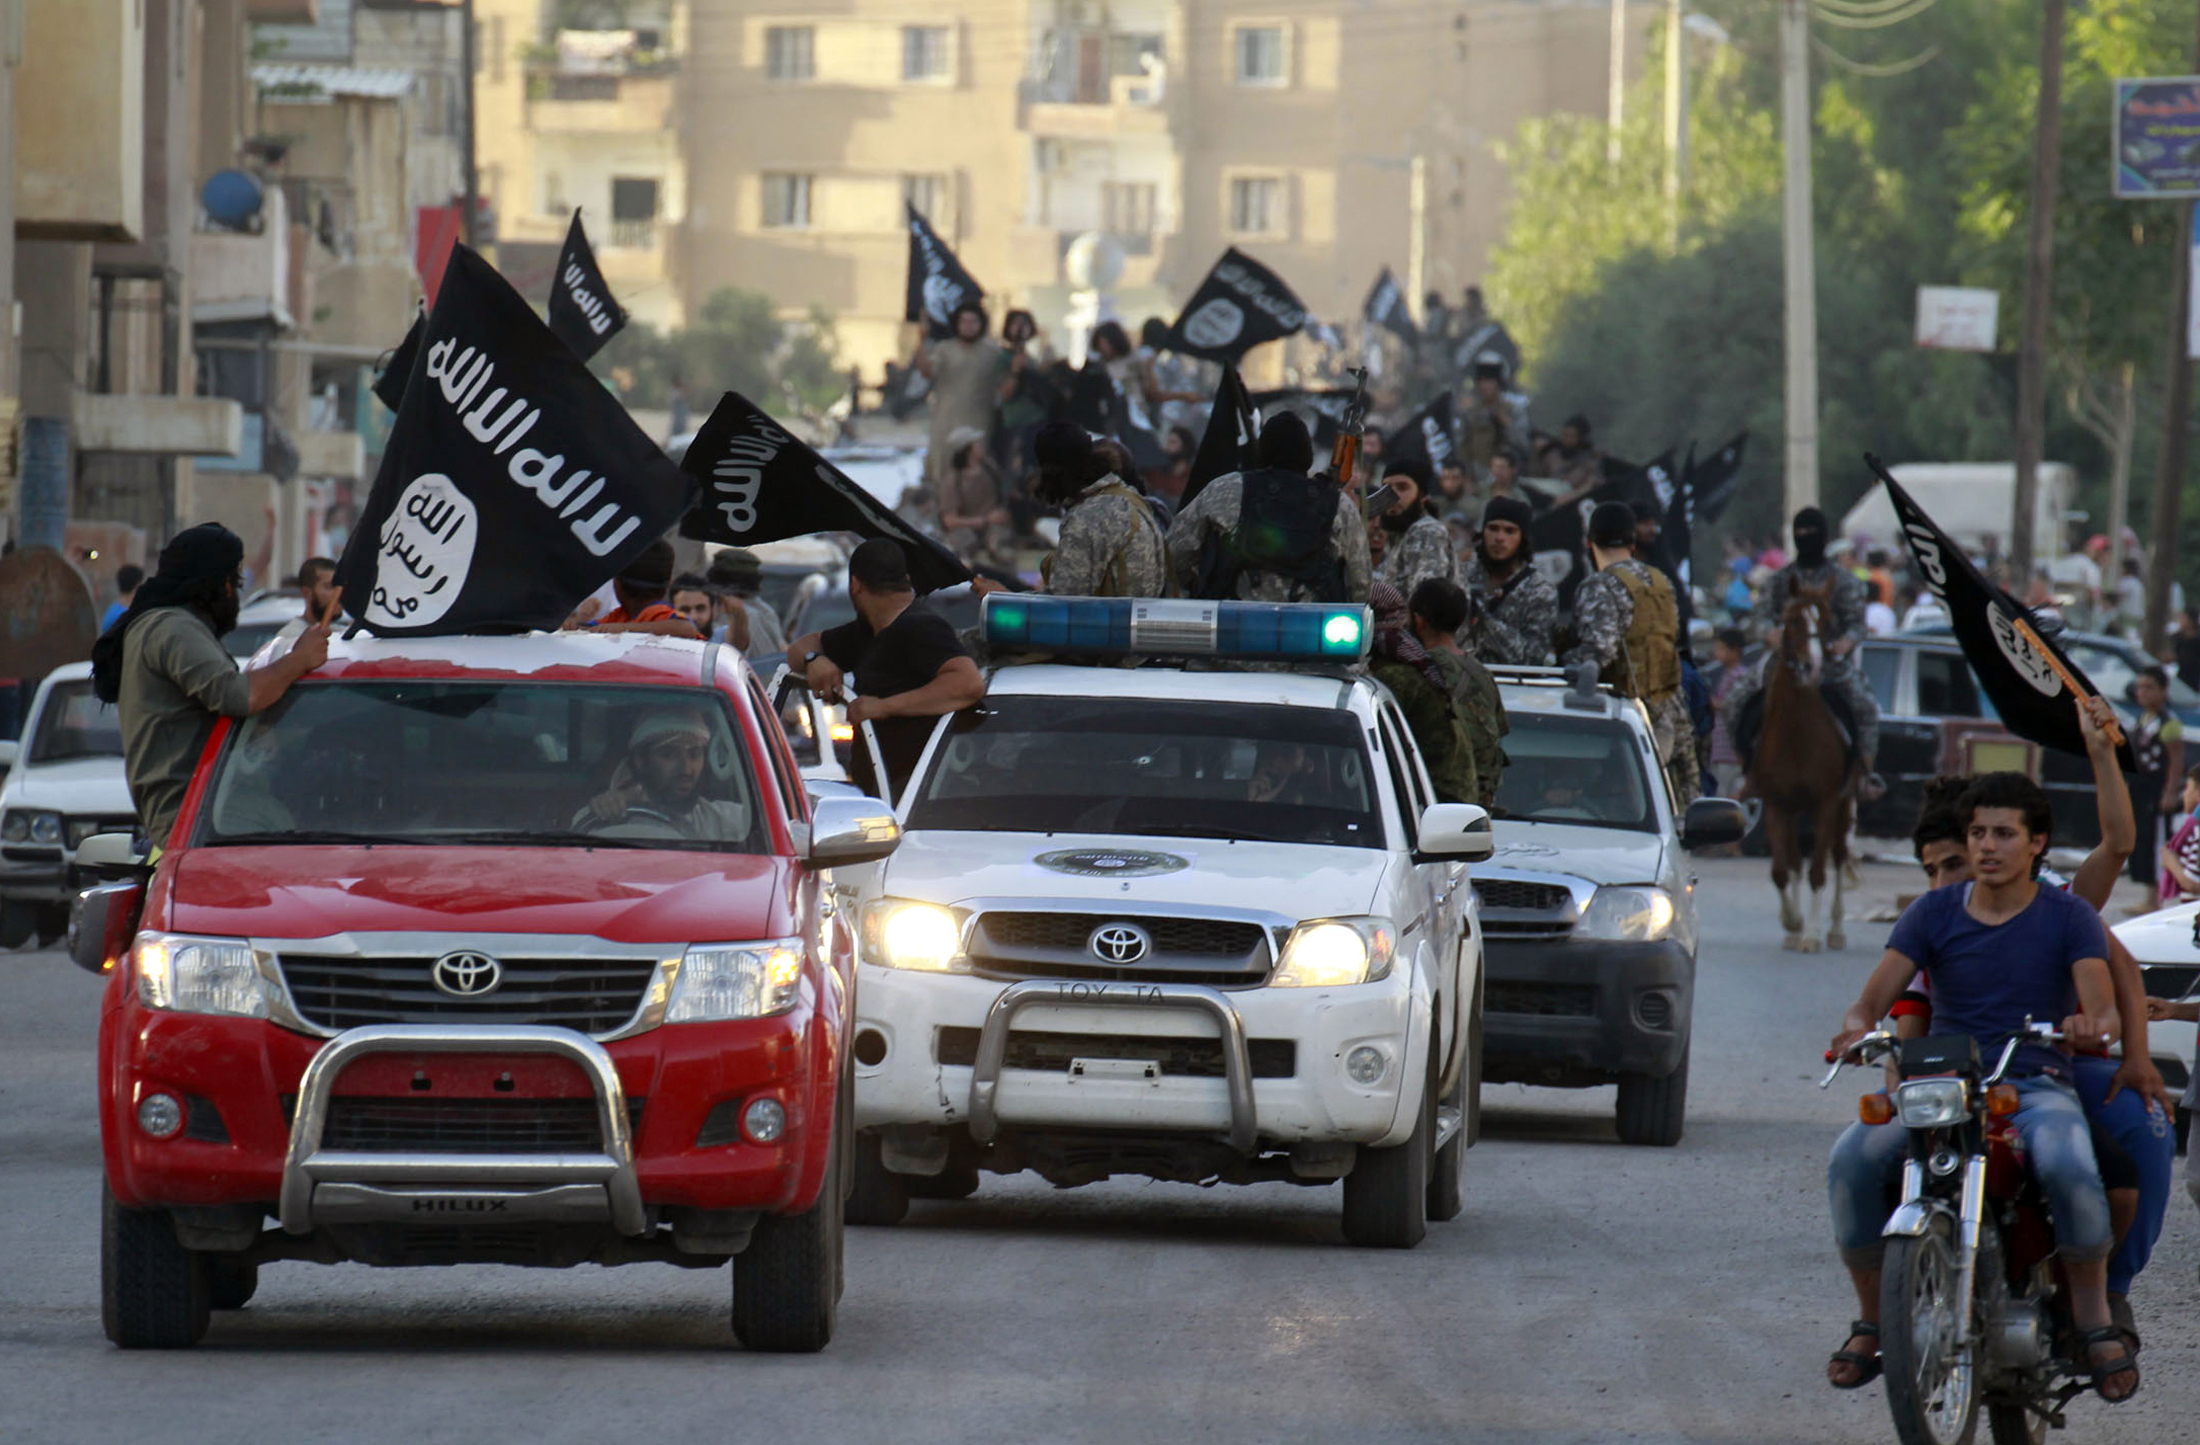 مقاتلين داعش يلوحون بالاعلام ويسيرون في عرض عسكري في شوارع شمال الرقة في 30 يونيو 2014.